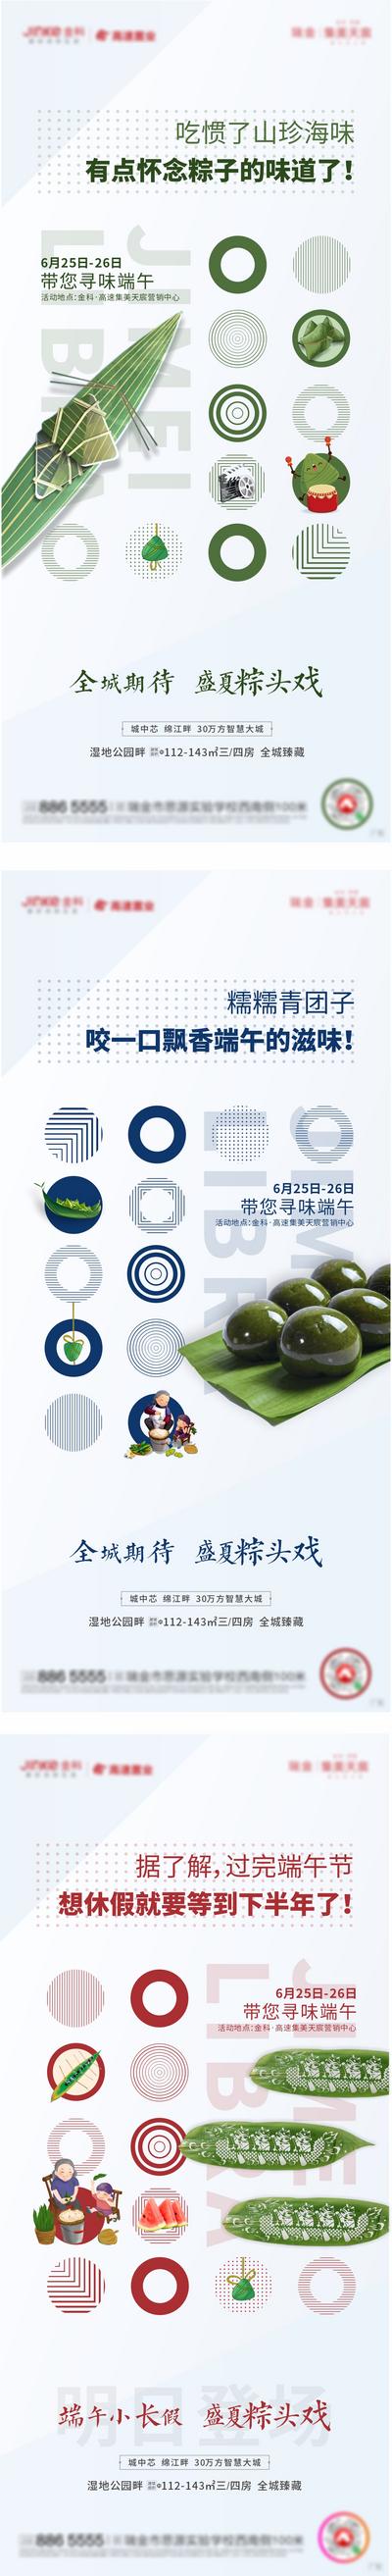 南门网 海报 房地产 端午节 中国传统节日 活动 创意 粽子 系列